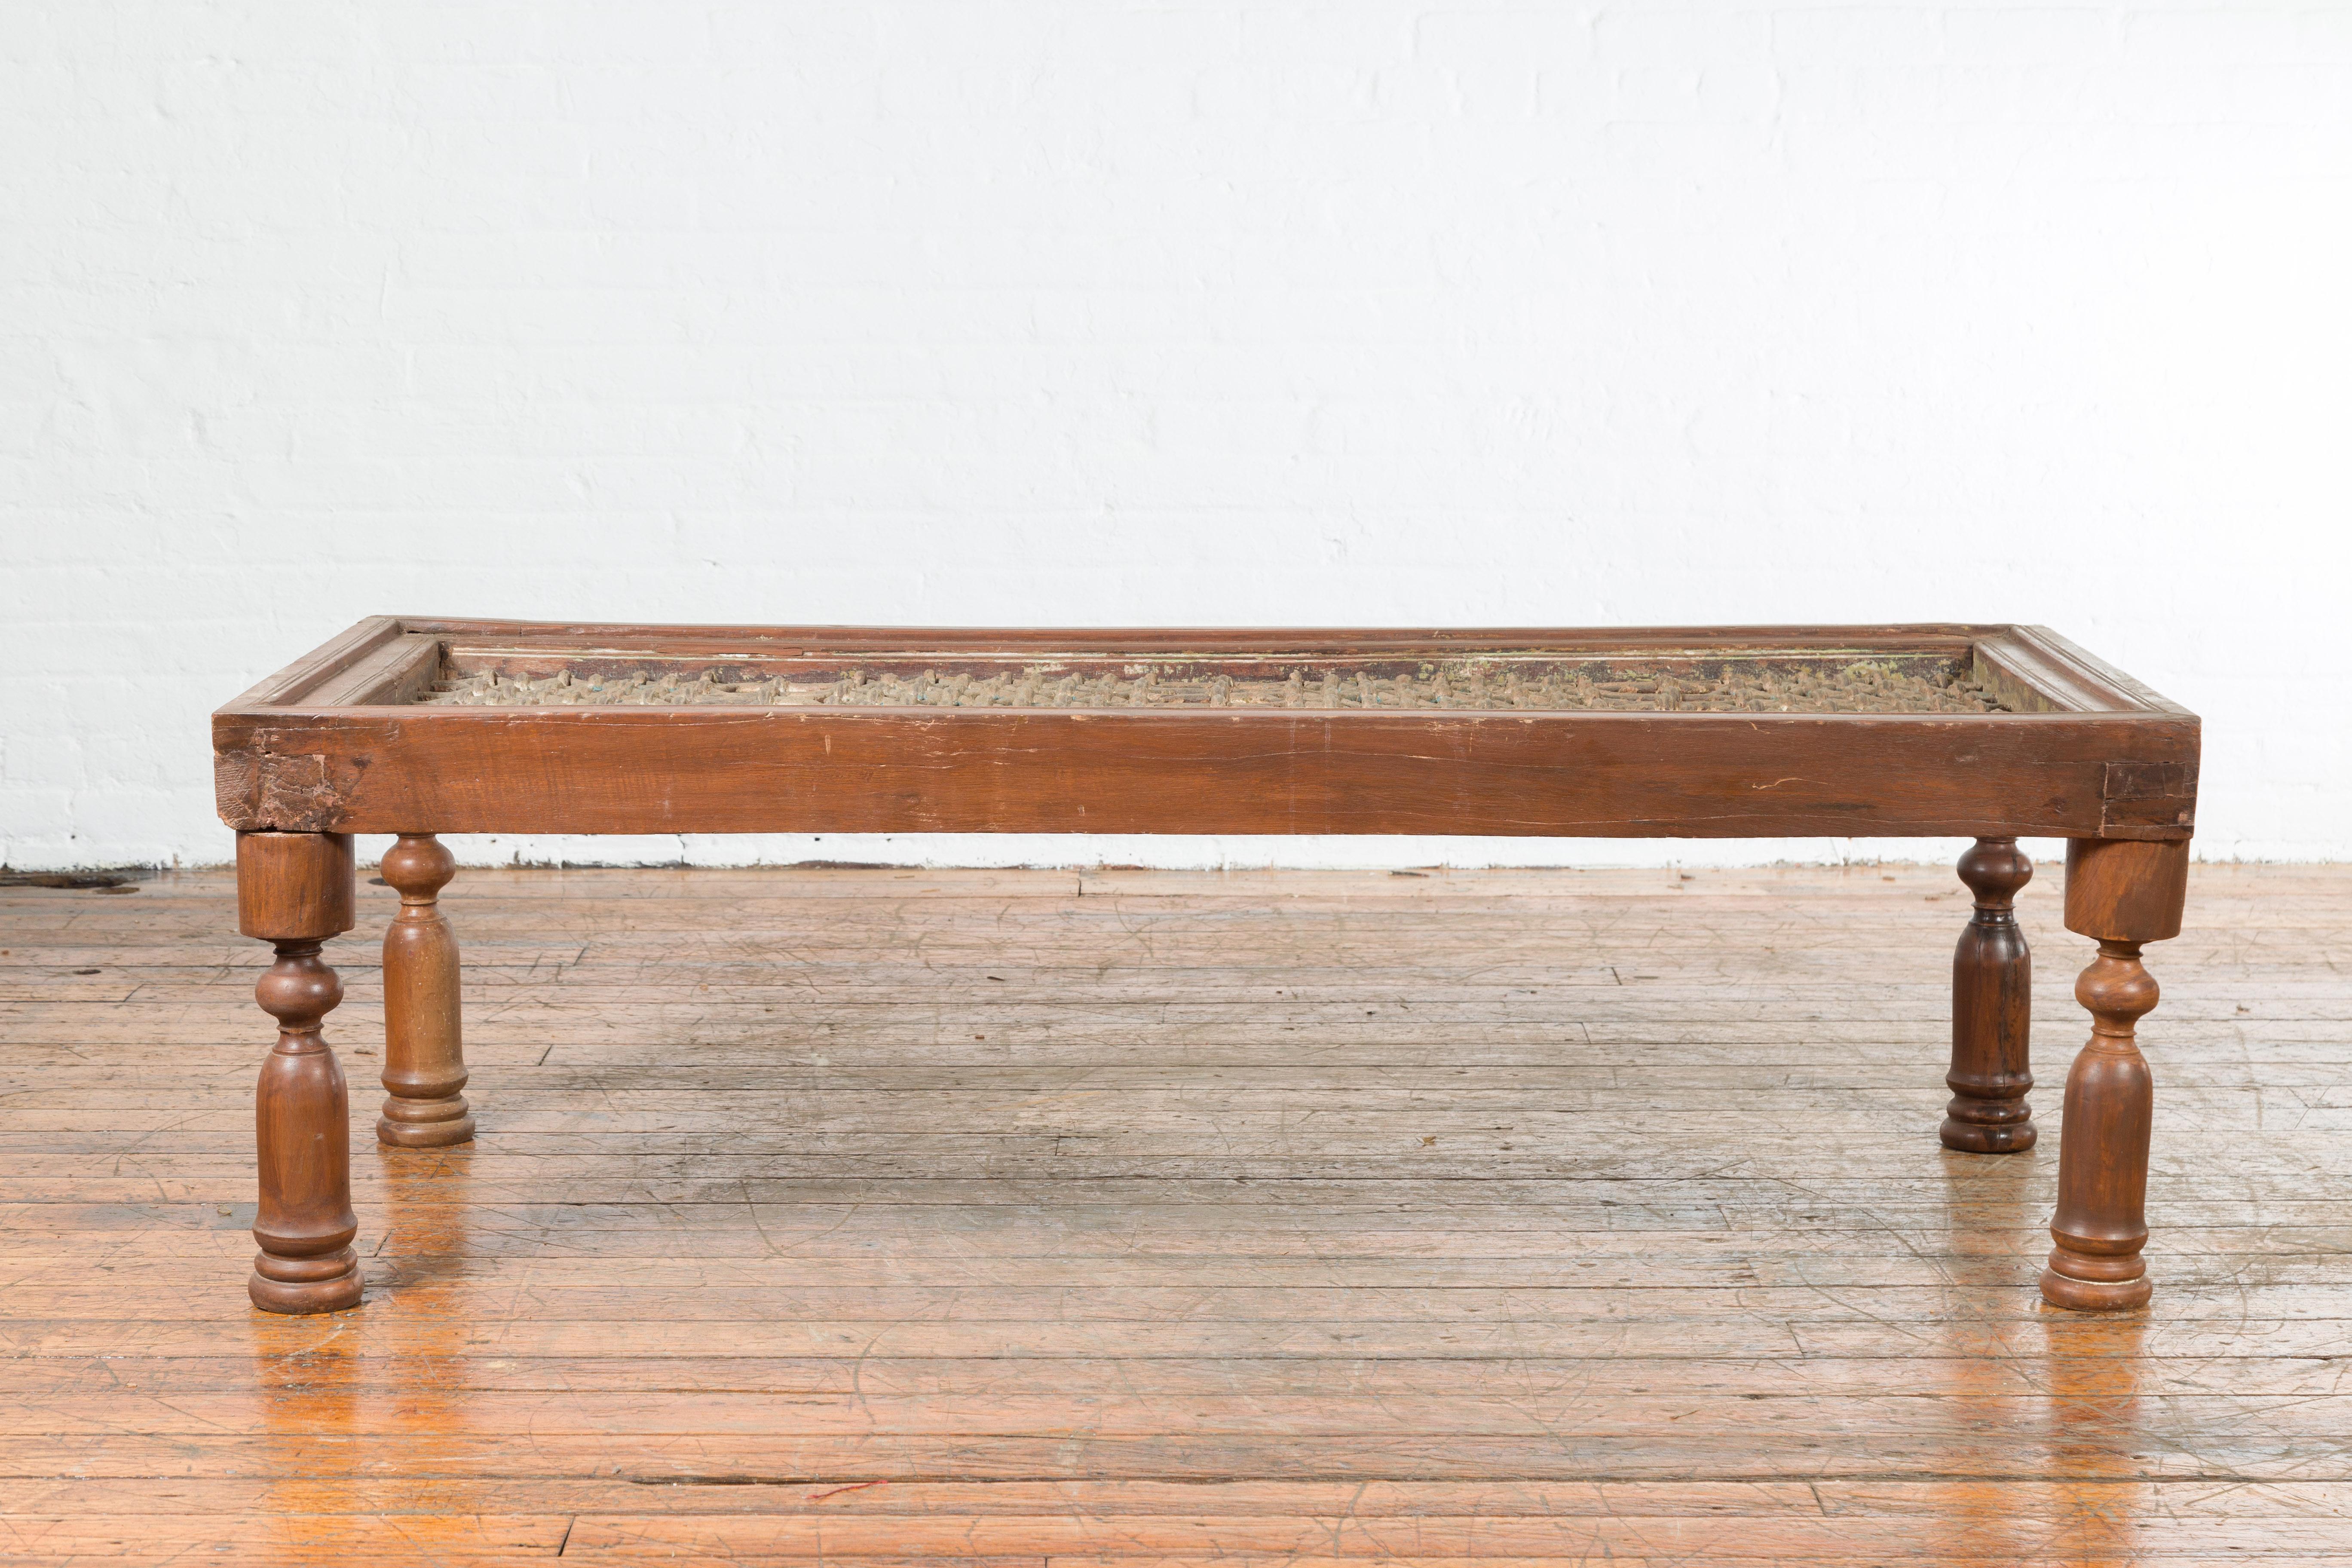 Une ancienne grille de fenêtre indienne du 19e siècle, transformée en table basse avec des pieds balustres. Créée en Inde au XIXe siècle, cette table basse présente un plateau en grille de fer à motifs géométriques, reposant sur quatre pieds